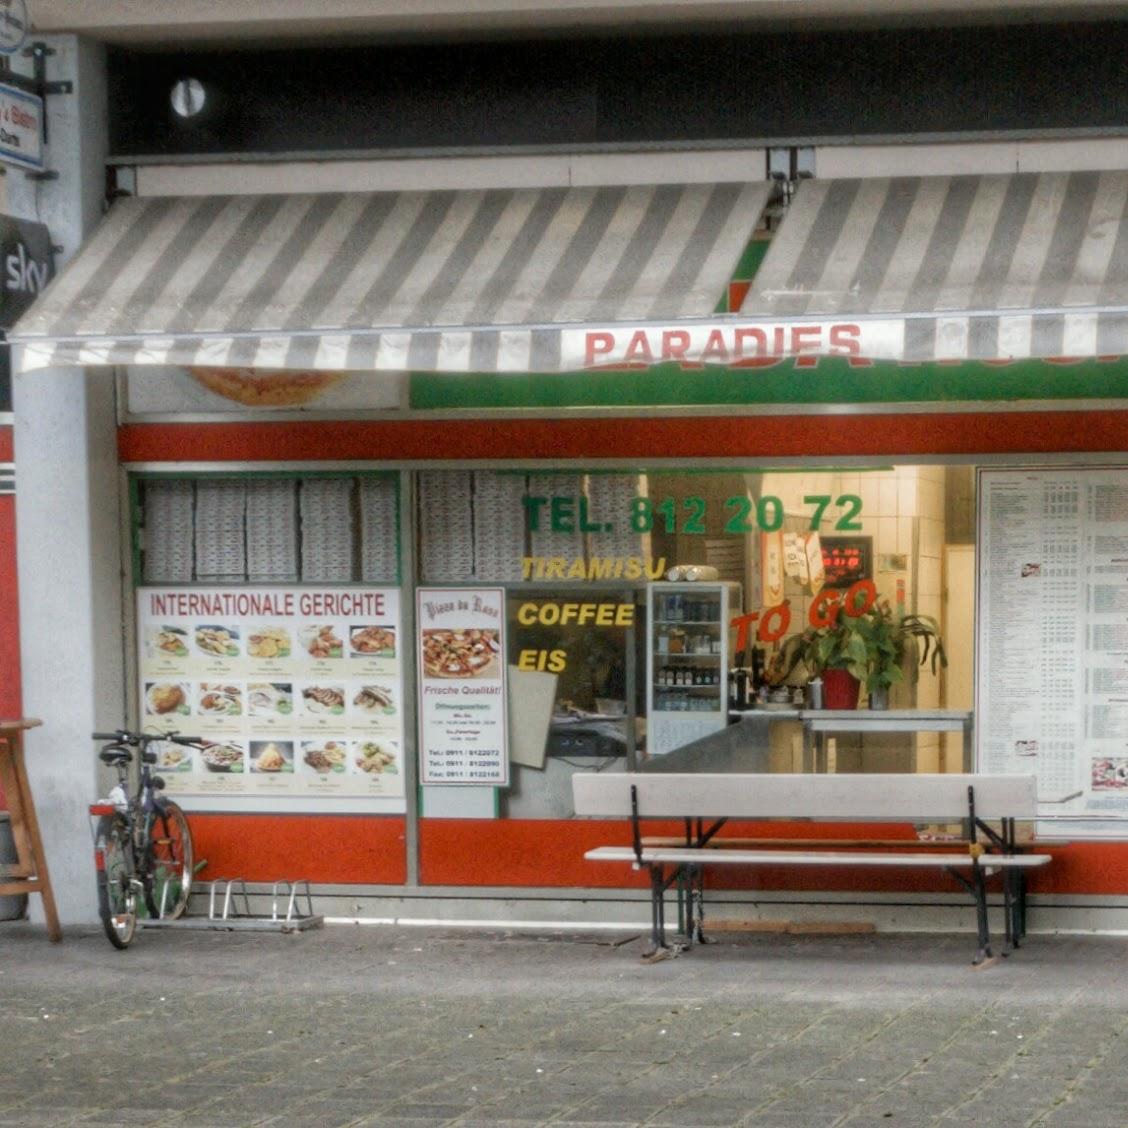 Restaurant "Pizza da rosa" in Nürnberg